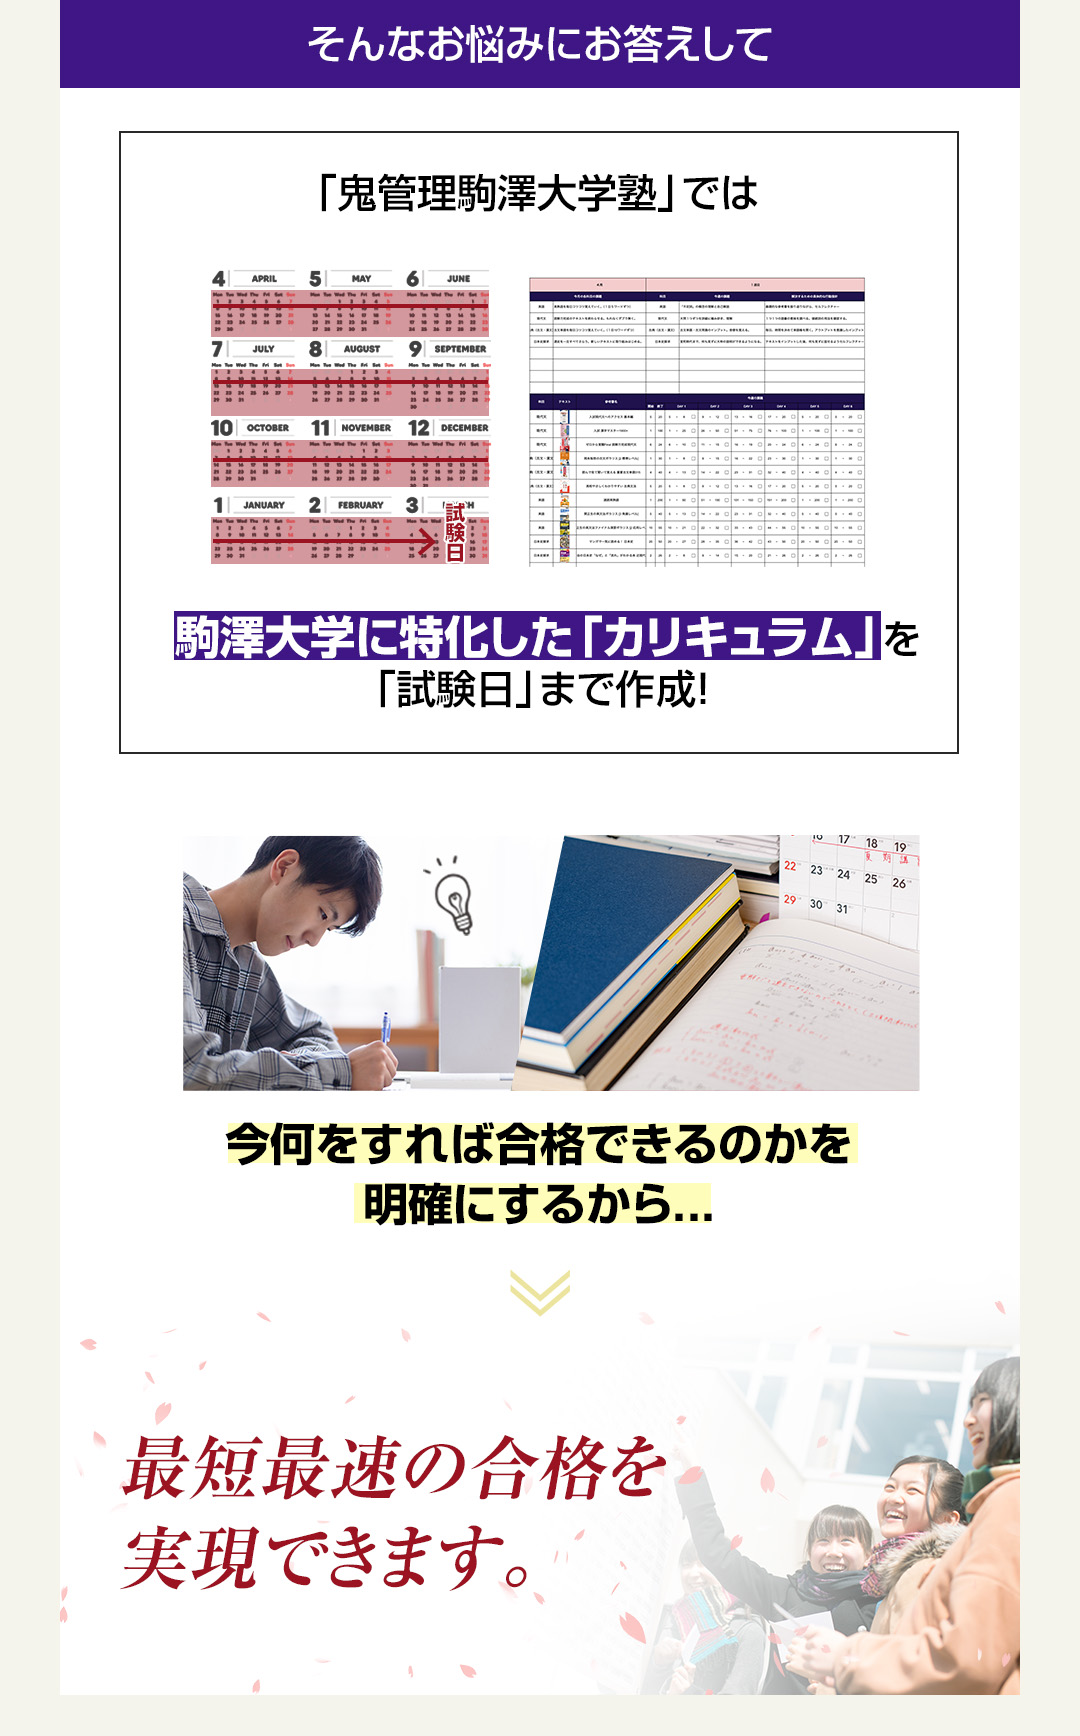 「鬼管理駒澤大学塾」では駒澤大学に特化した「カリキュラム」を「試験日」まで作成